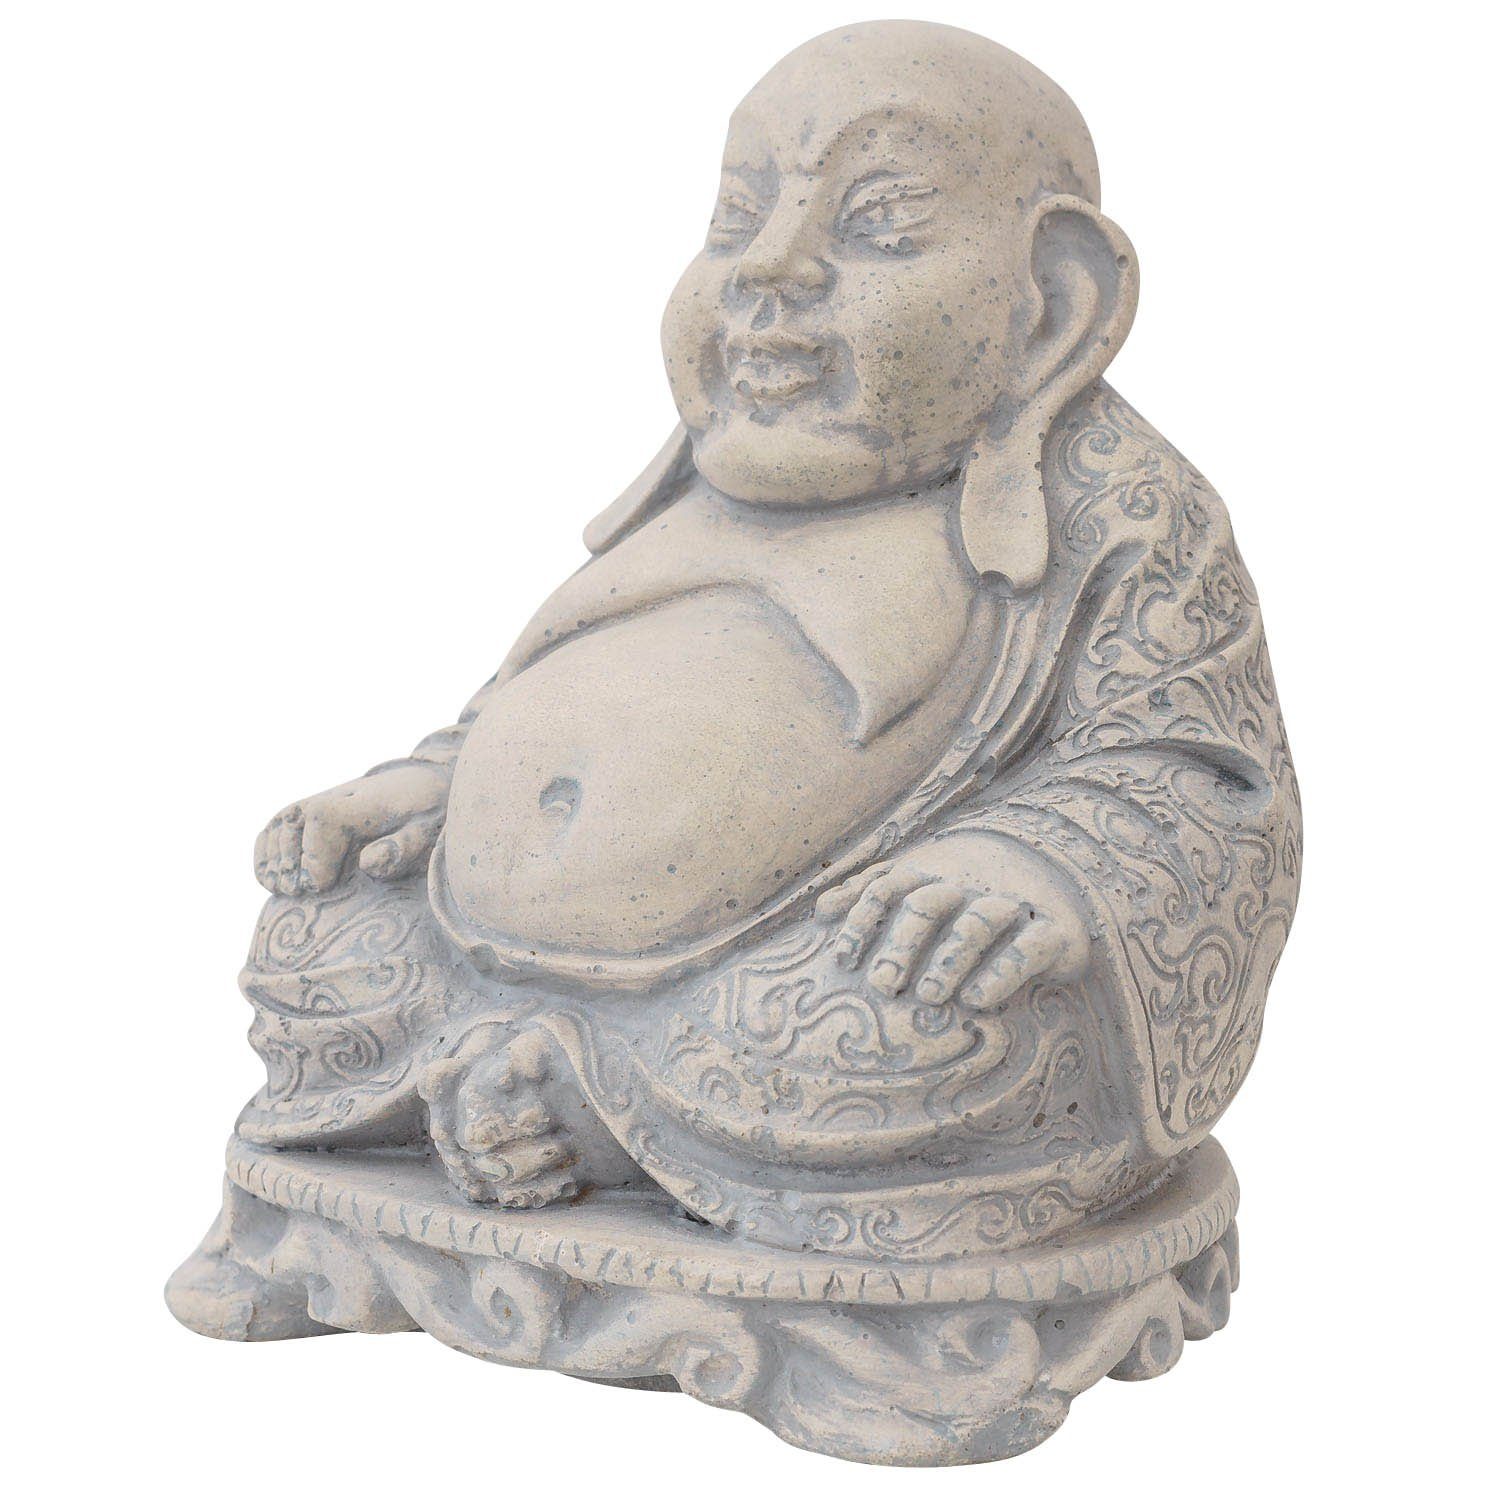 Aubaho Gartenfigur Skulptur lachender Buddha Glücksbuddha Figur Statue massiv Antik-Stil